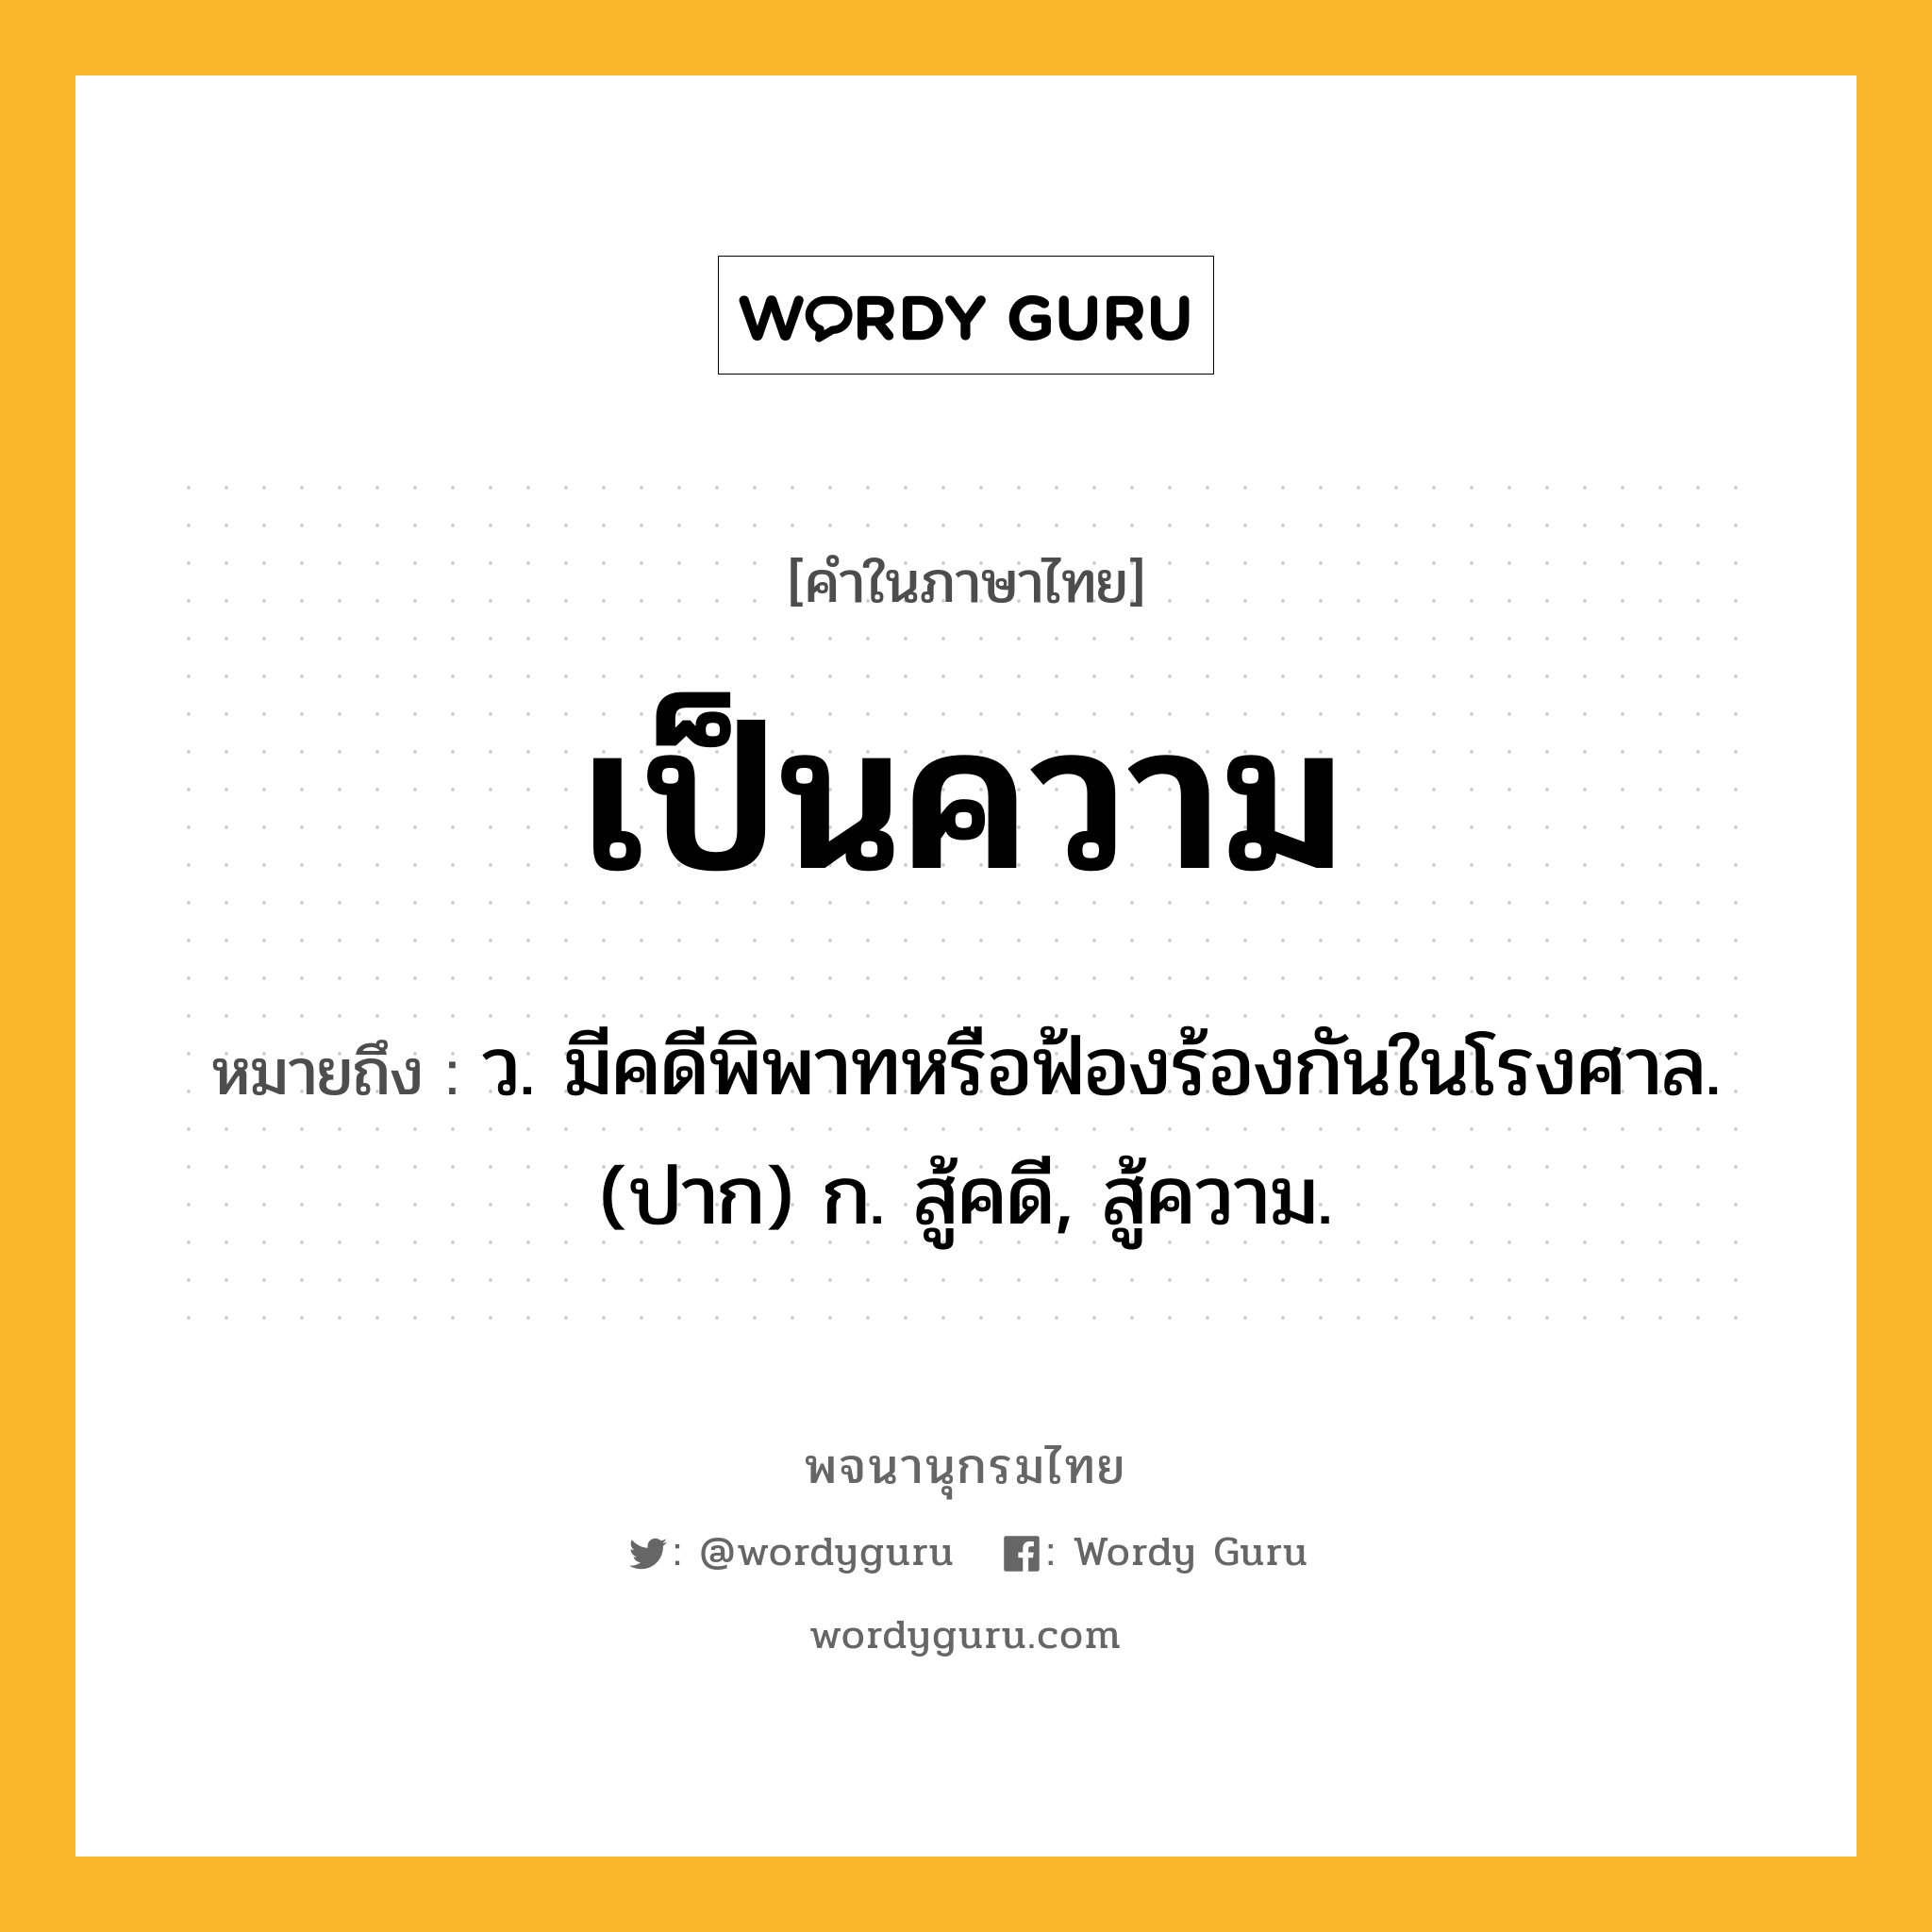 เป็นความ ความหมาย หมายถึงอะไร?, คำในภาษาไทย เป็นความ หมายถึง ว. มีคดีพิพาทหรือฟ้องร้องกันในโรงศาล. (ปาก) ก. สู้คดี, สู้ความ.